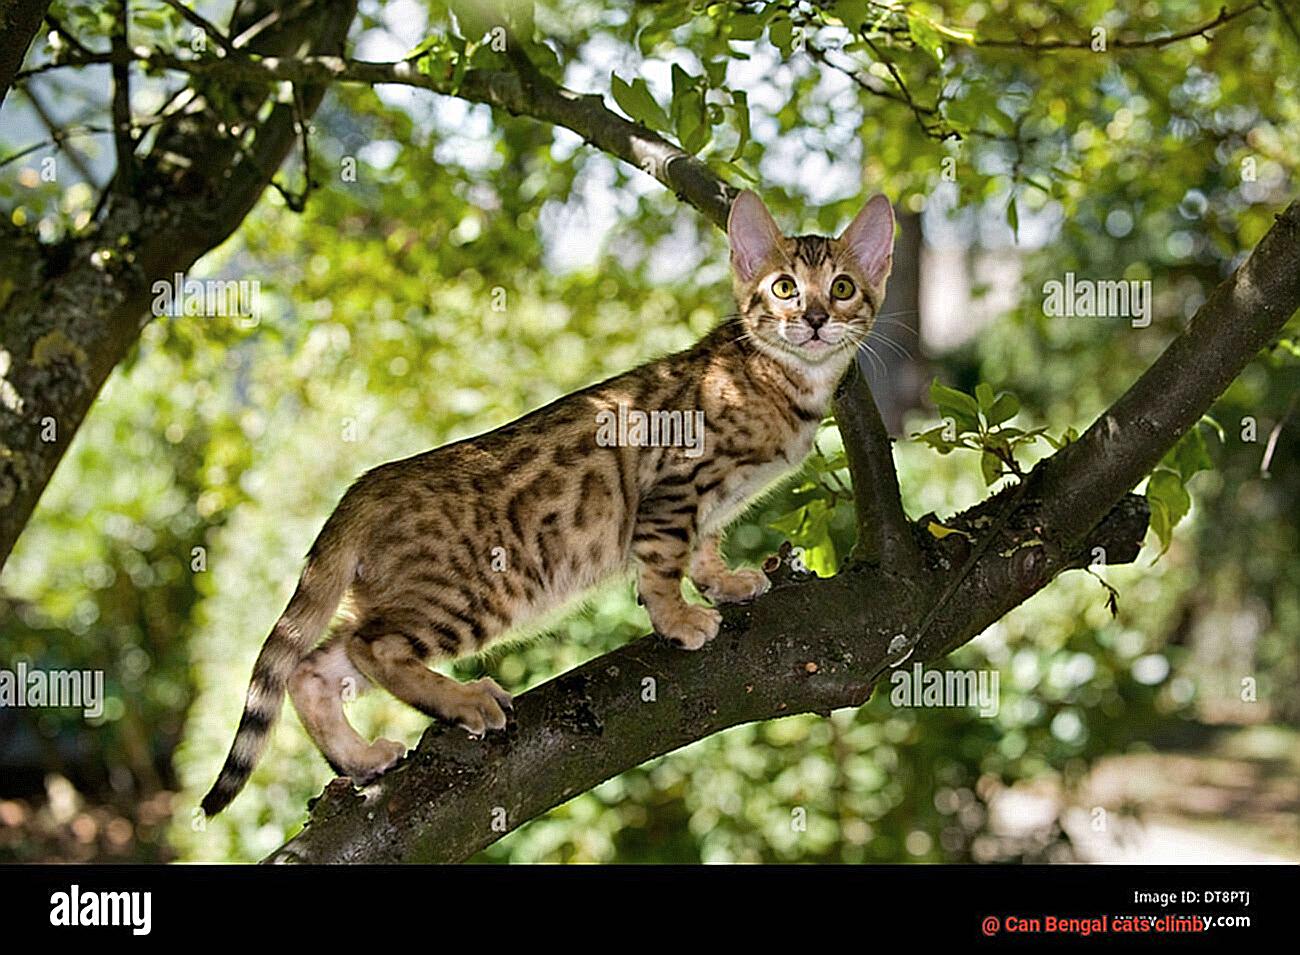 Can Bengal cats climb-2